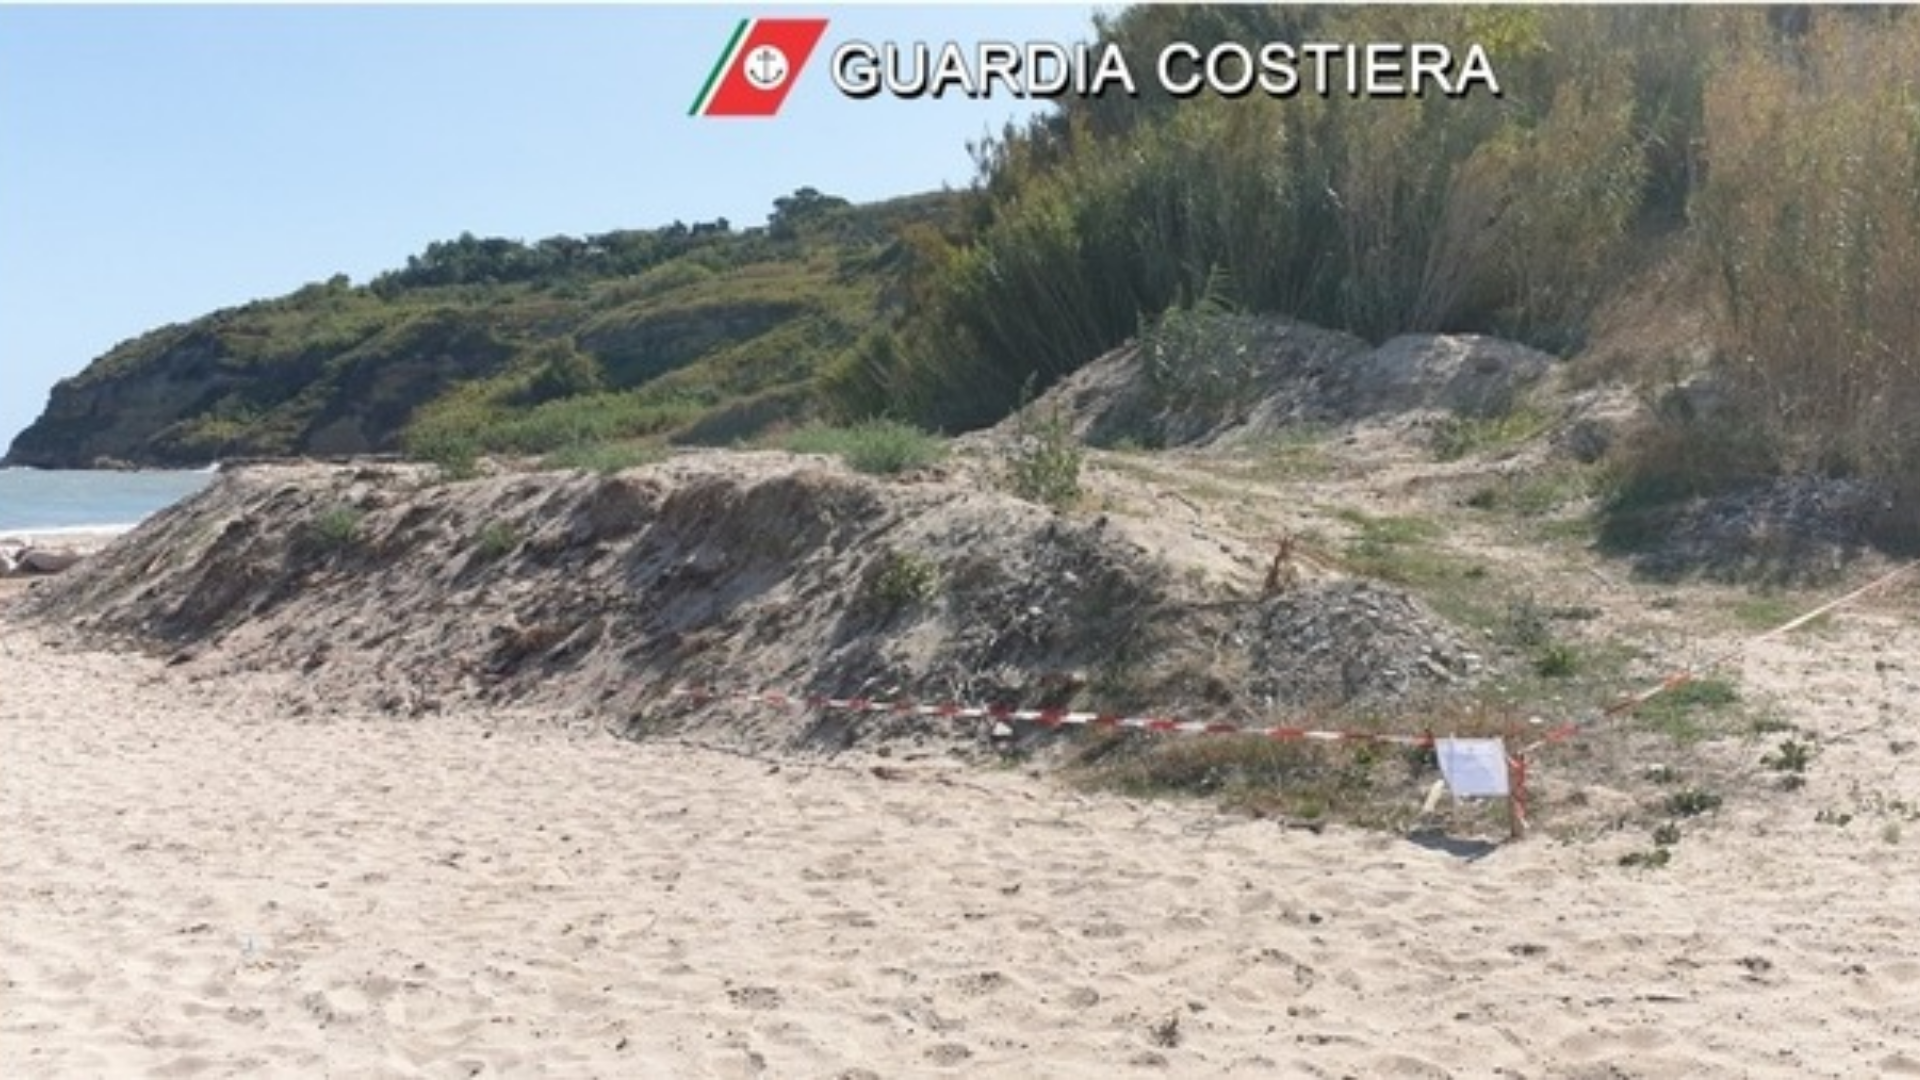 Spiaggia libera ma carica di rifiuti: interviene la Capitaneria, caccia ai responsabili